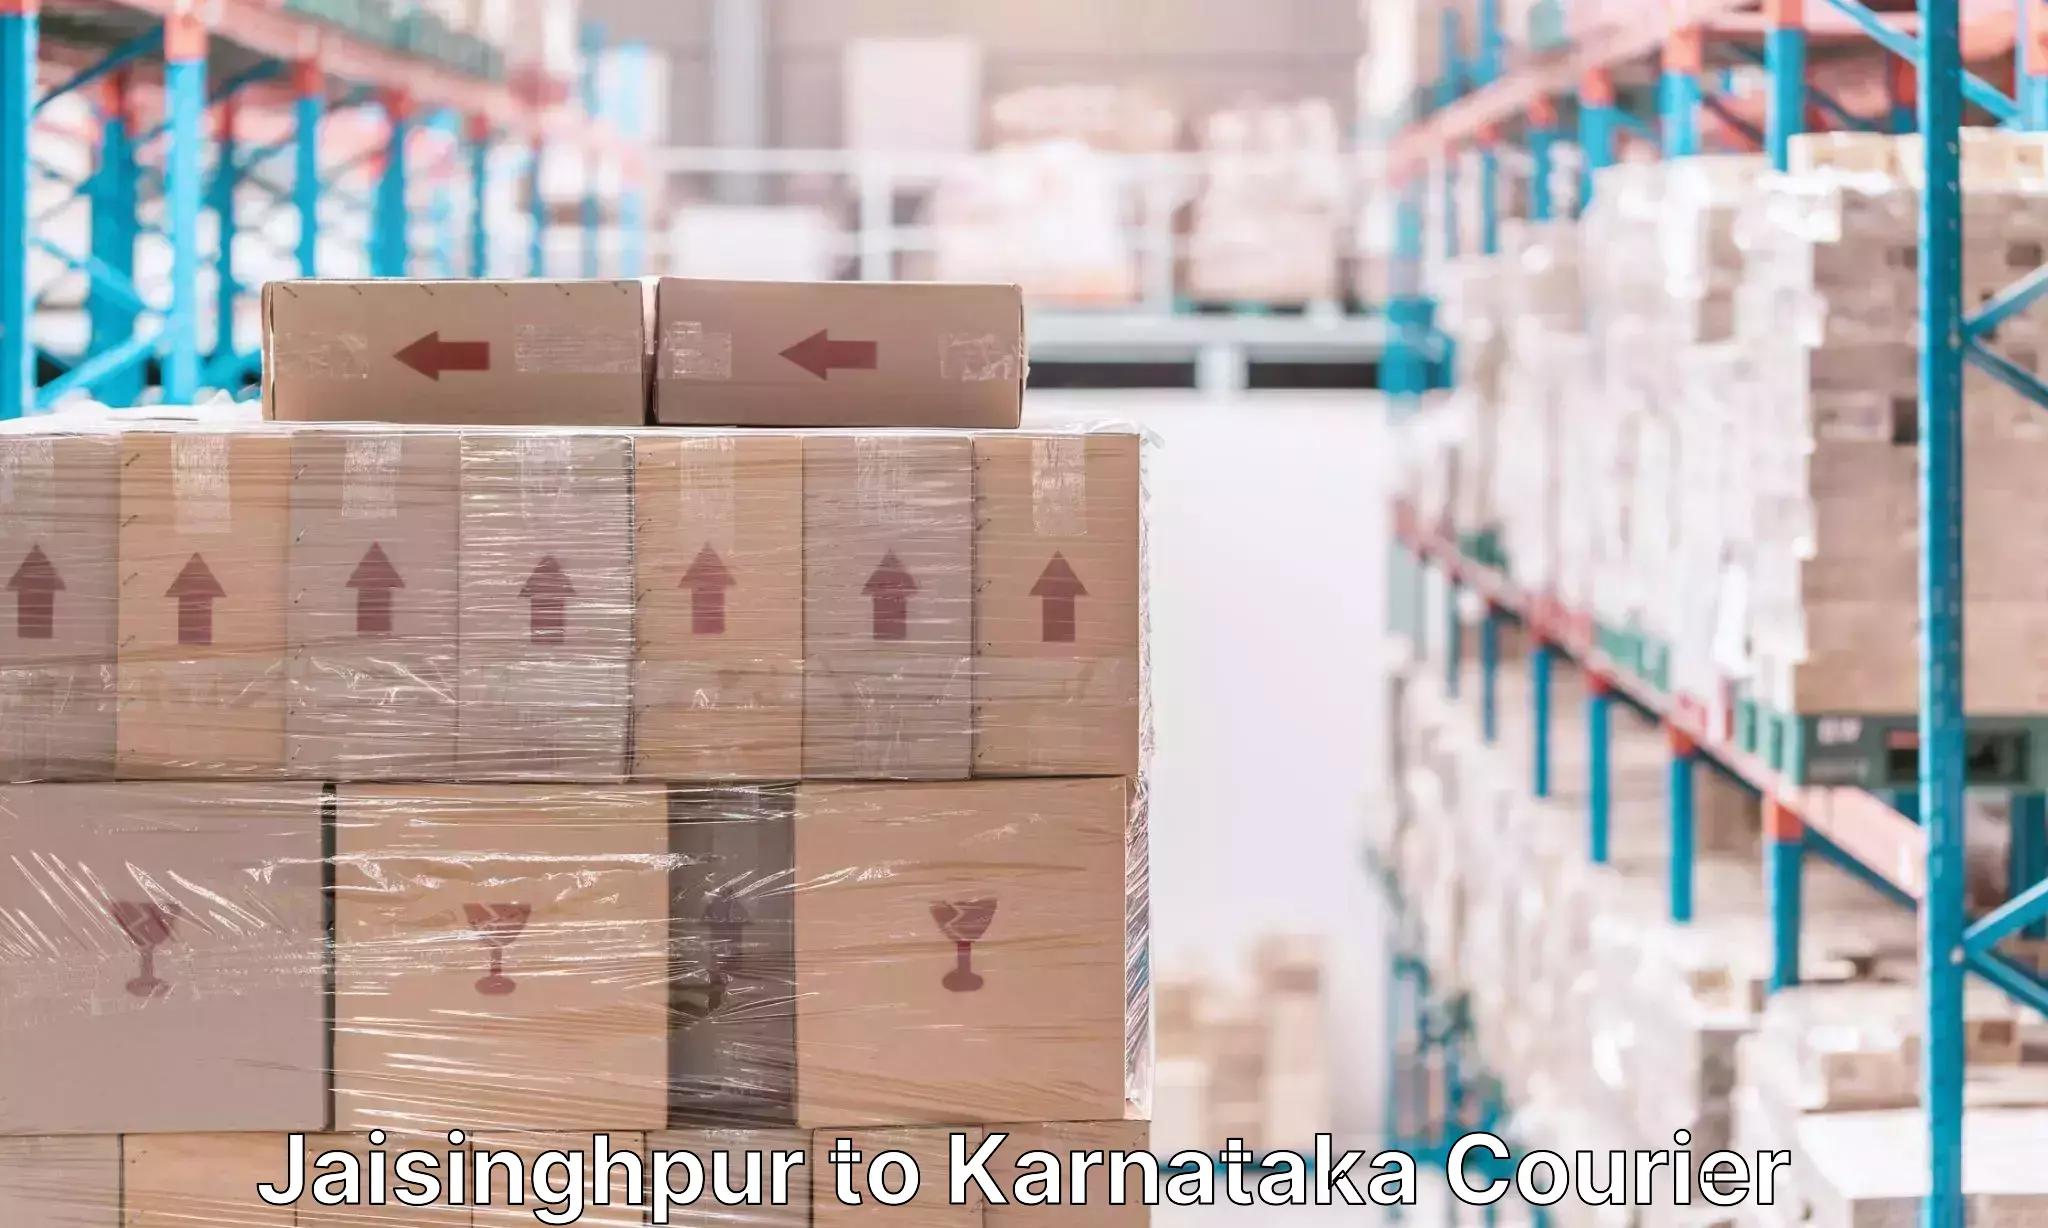 High-quality baggage shipment Jaisinghpur to Karnataka